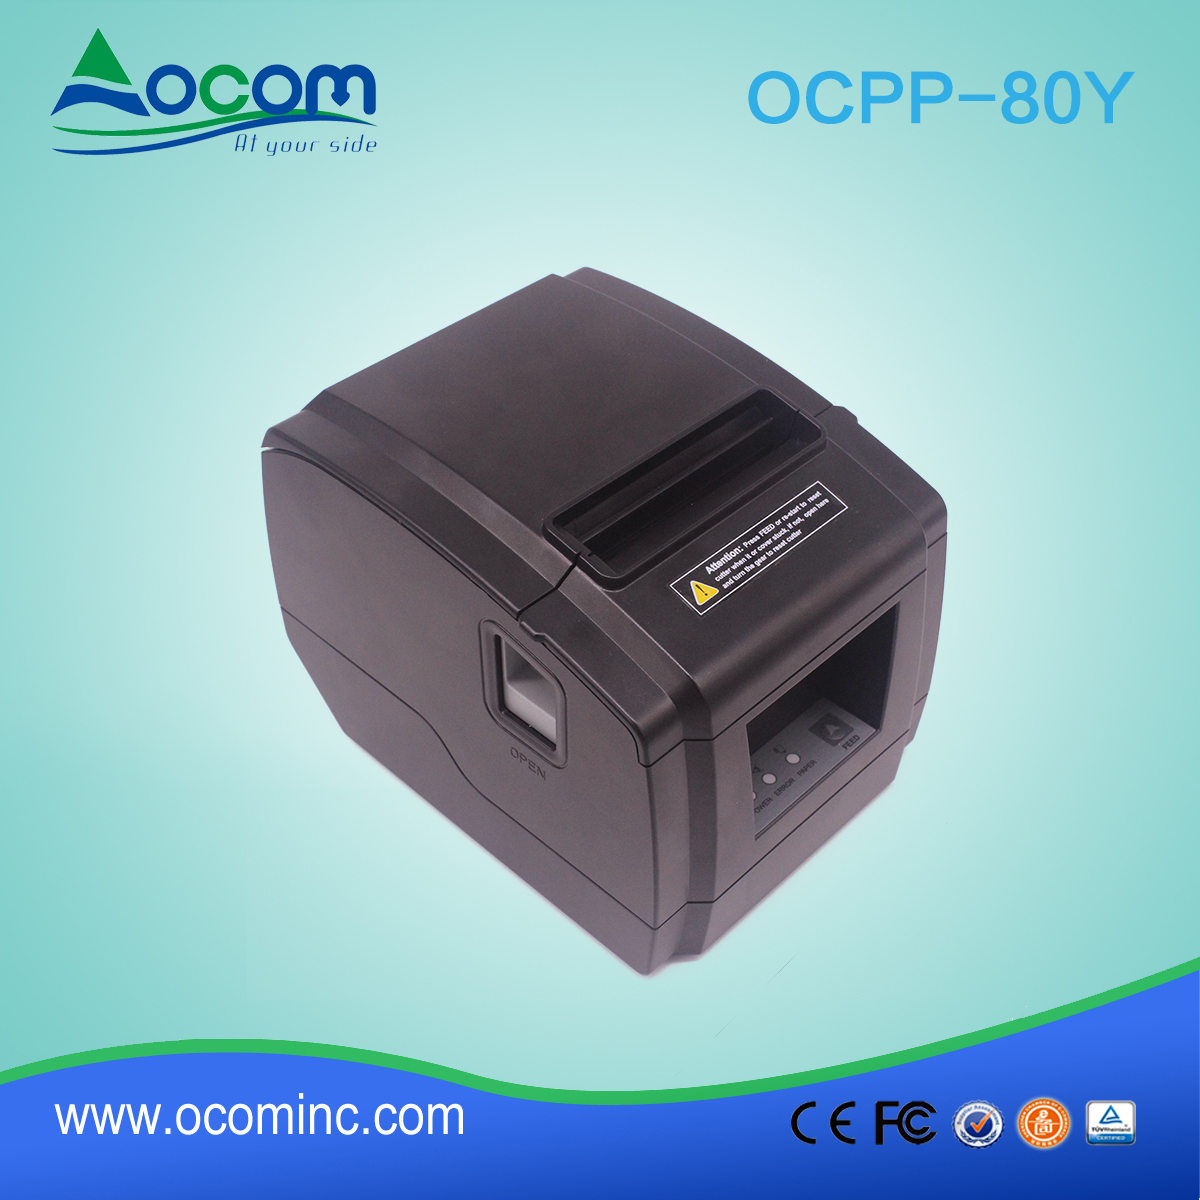 OCPP-80Y - Niskokosztowa automatyczna drukarka pokwitowań 3 "